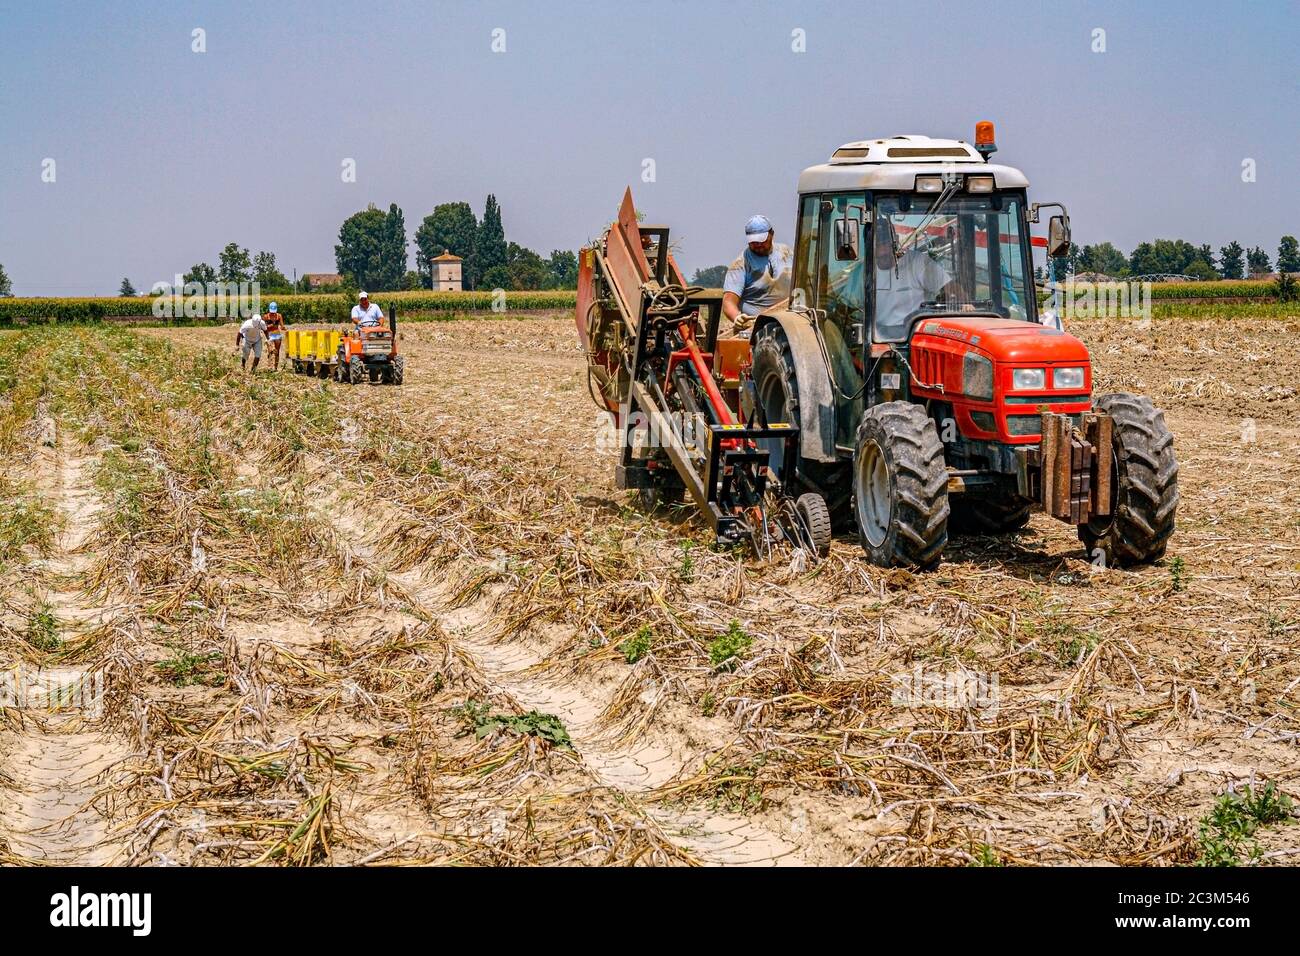 Italia Emilia Romagna - Ducentola di Voghiera (FE) - Azienda agricola aglio del Nonno - lavorazione e produzione di aglio DOP Voghiera Foto Stock